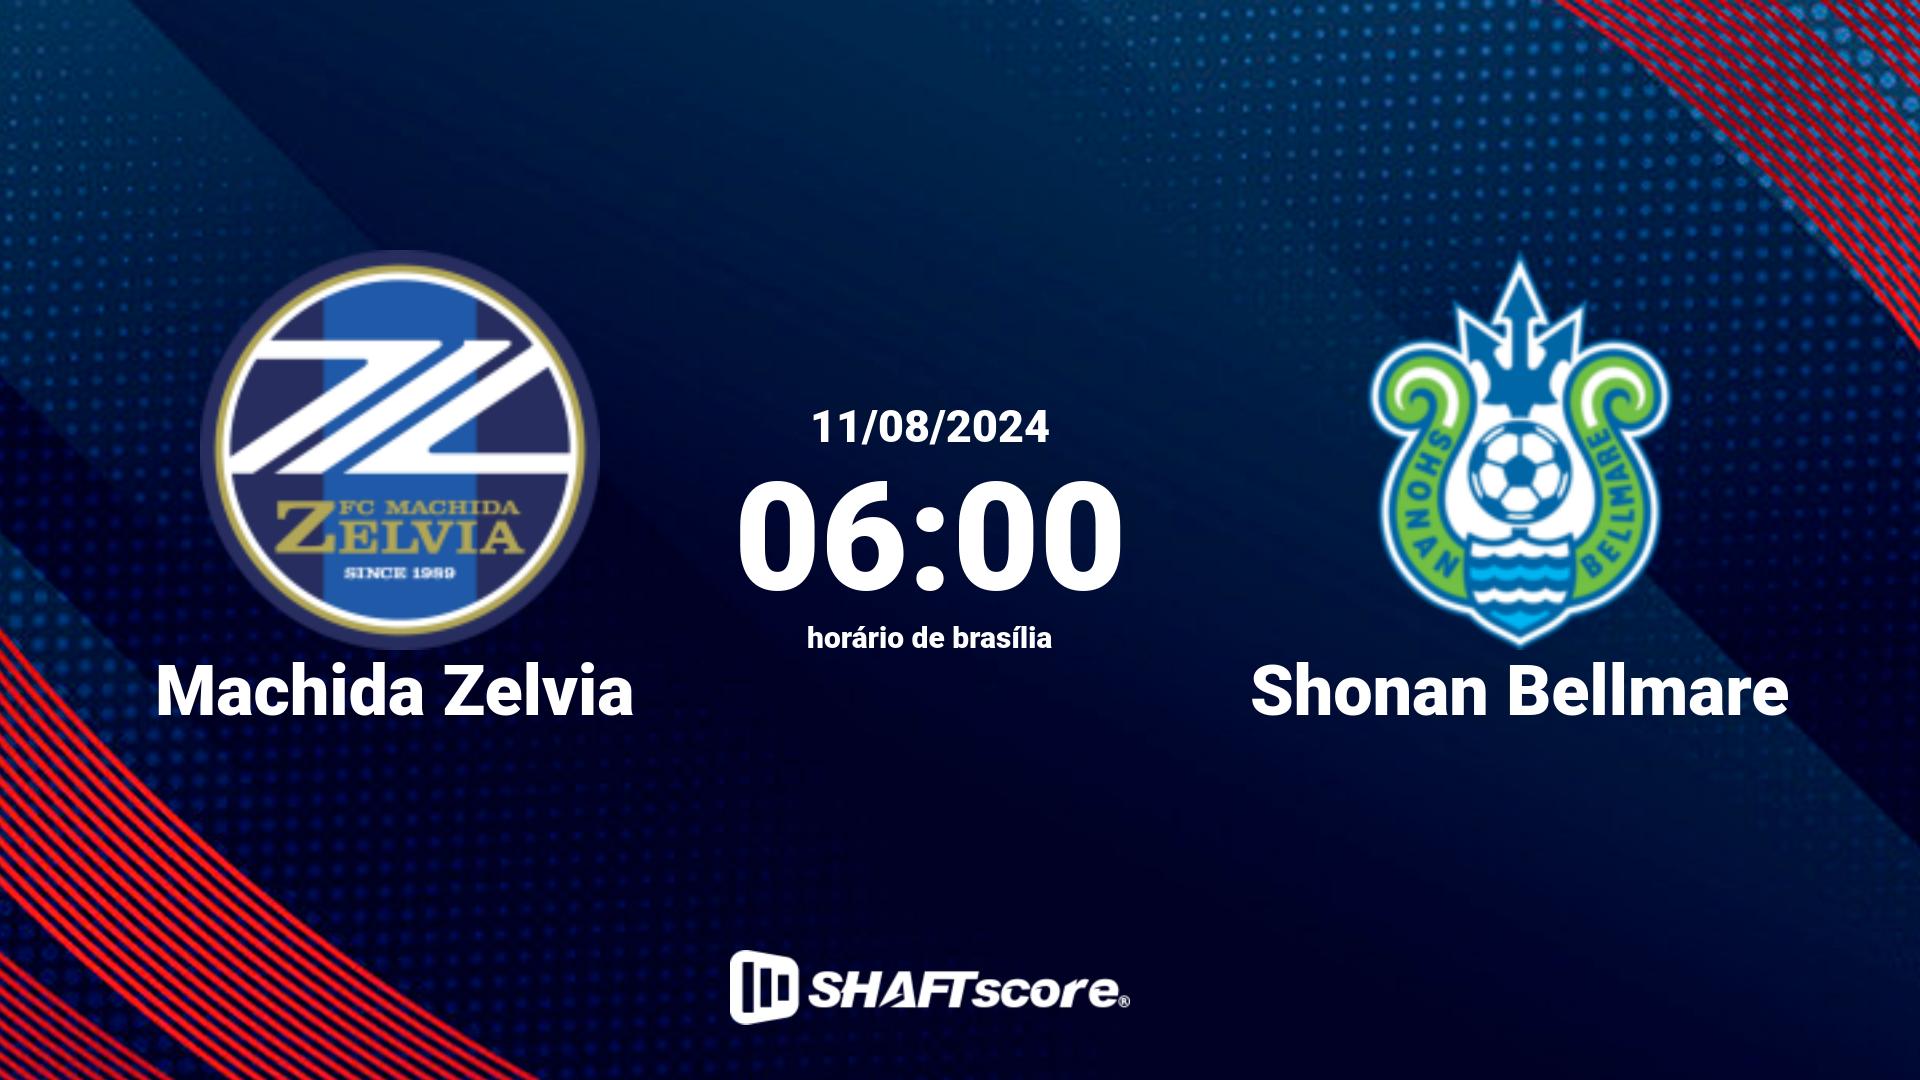 Estatísticas do jogo Machida Zelvia vs Shonan Bellmare 11.08 06:00